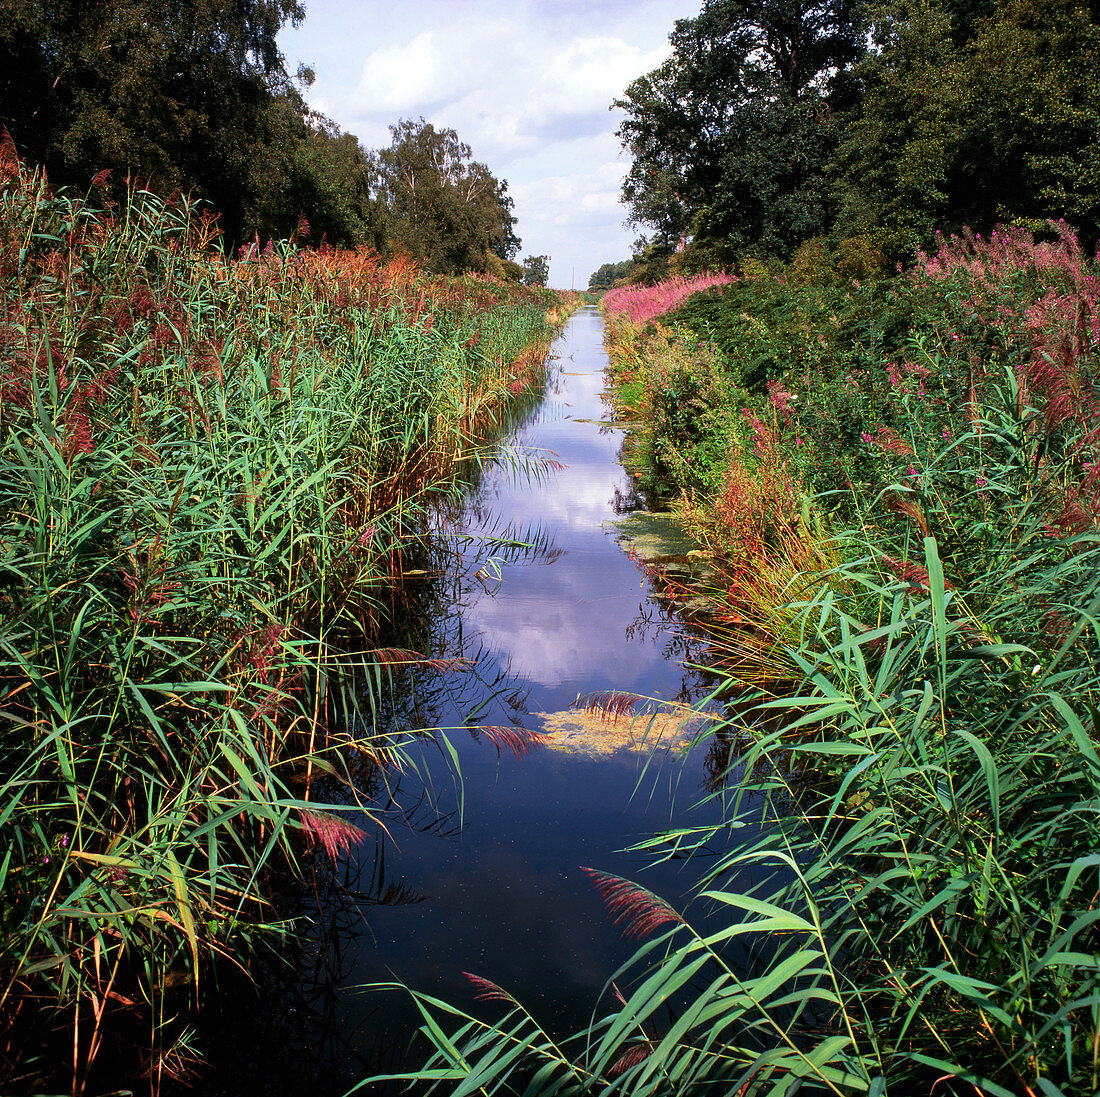 Stream in a nature reserve